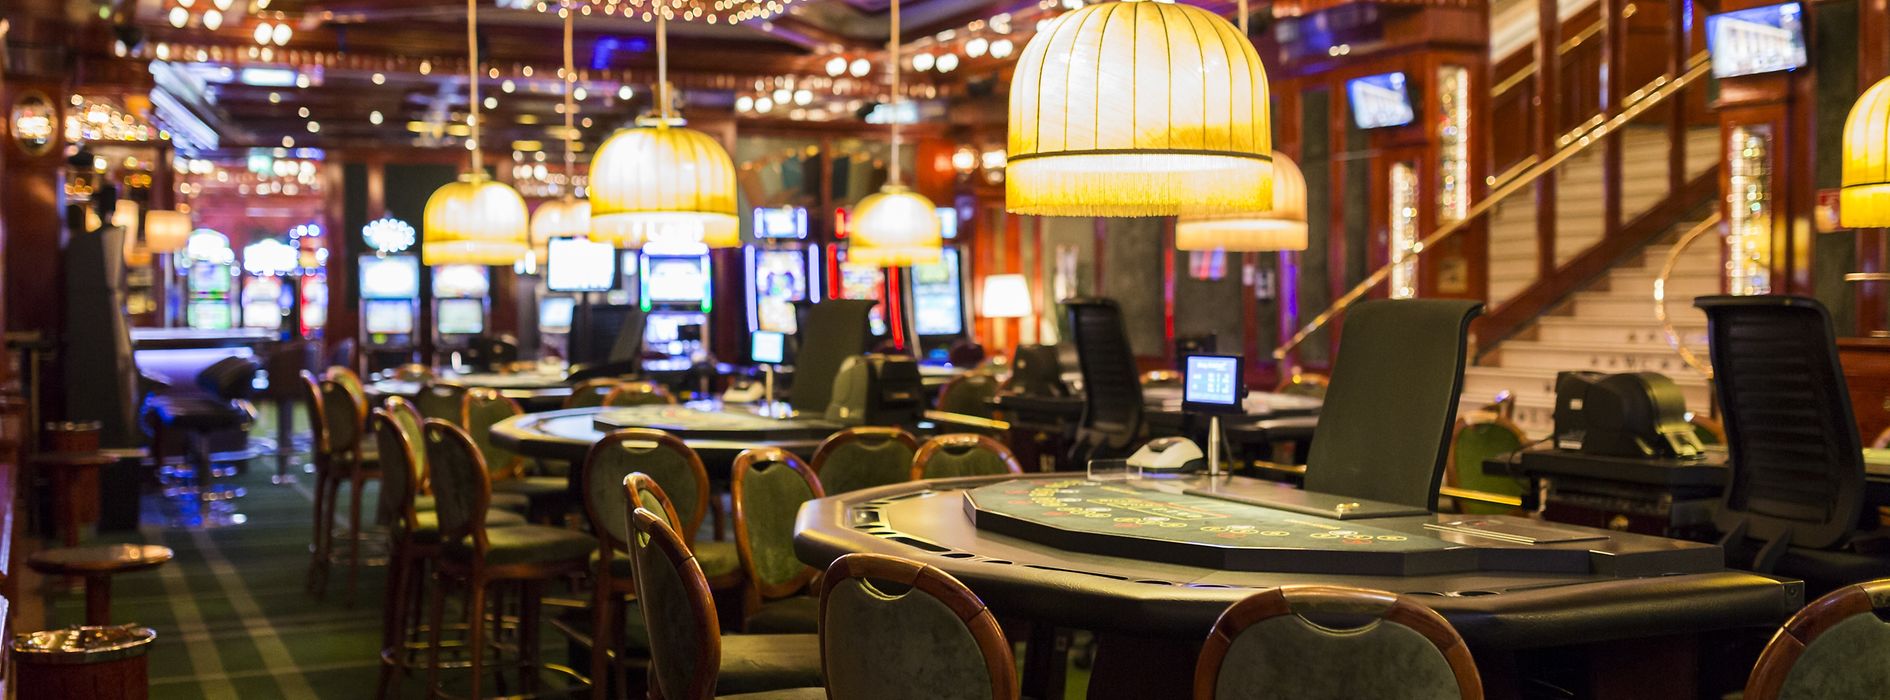 15 unerhörte Wege, um mehr die besten Online Casino zu erreichen